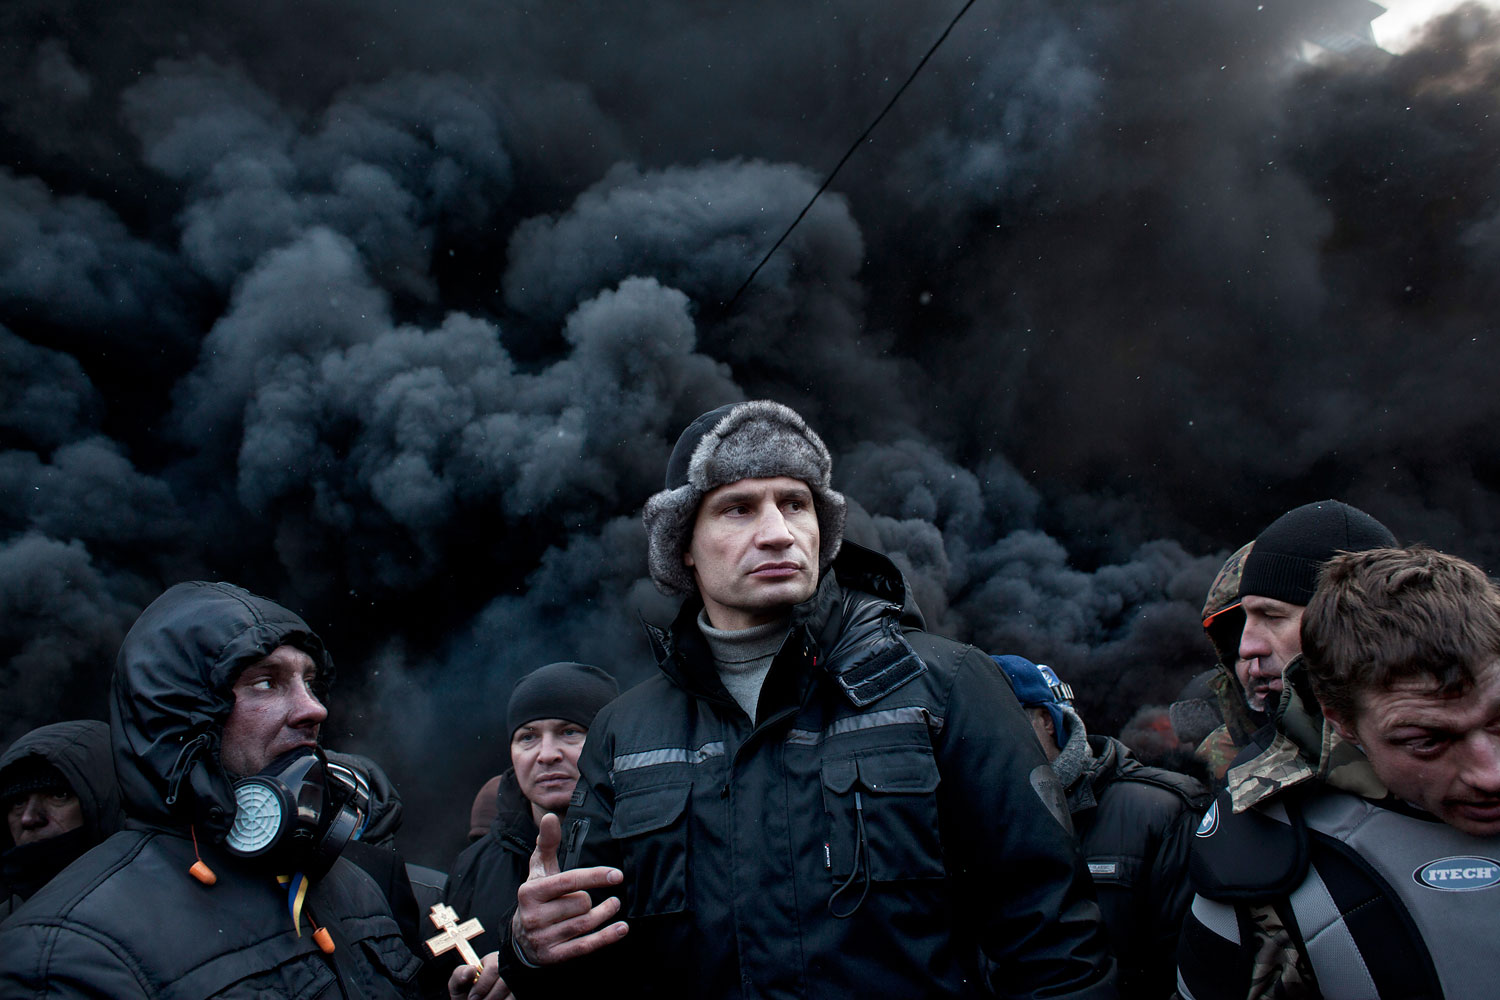 Police Crack Down On Protests In Kiev